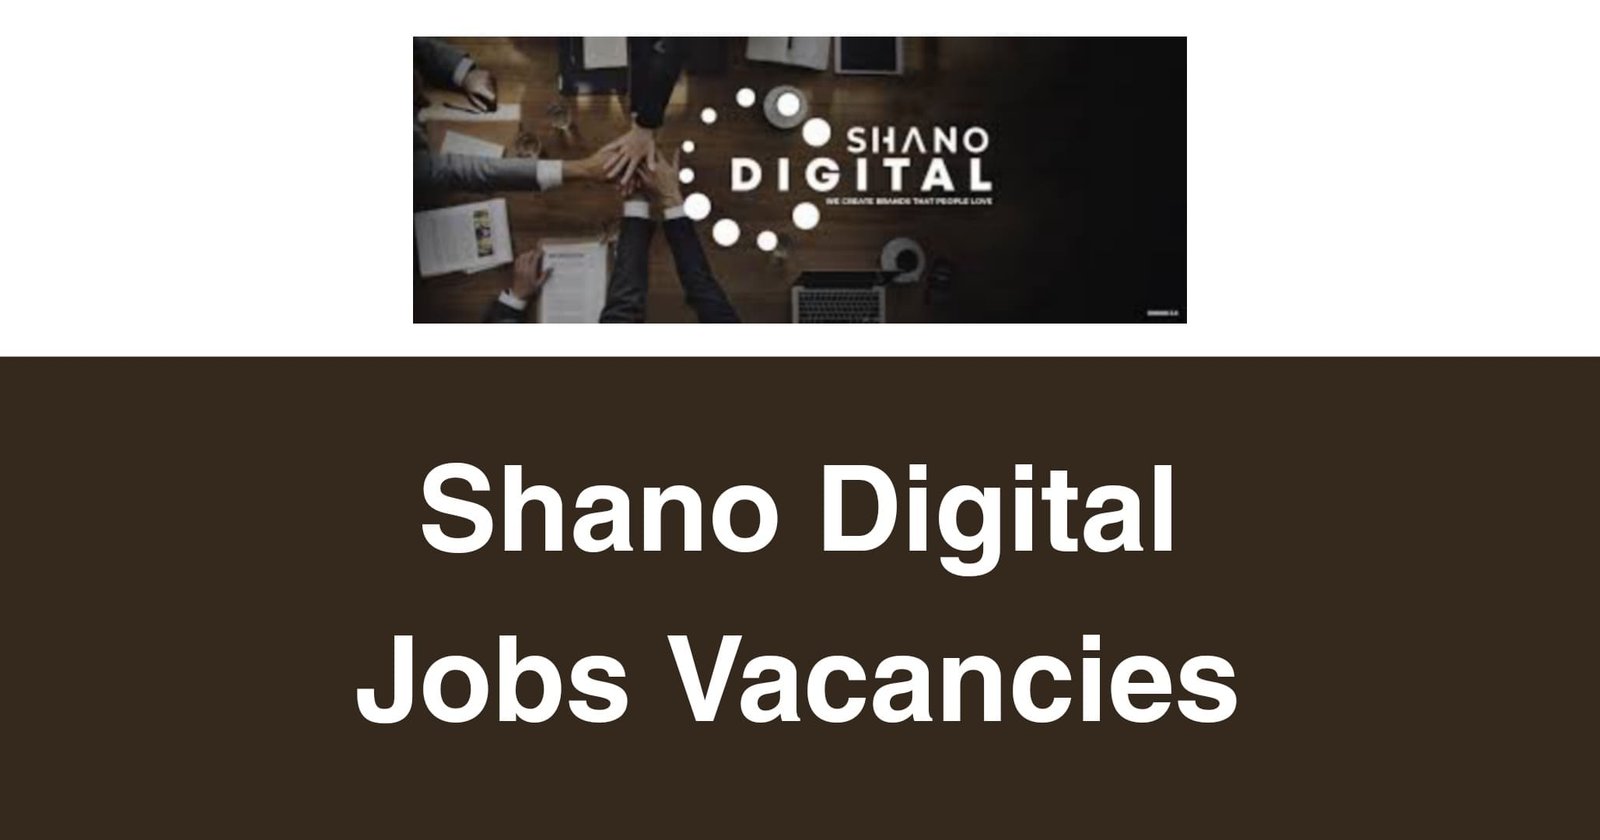 Shano Digital Jobs Vacancies